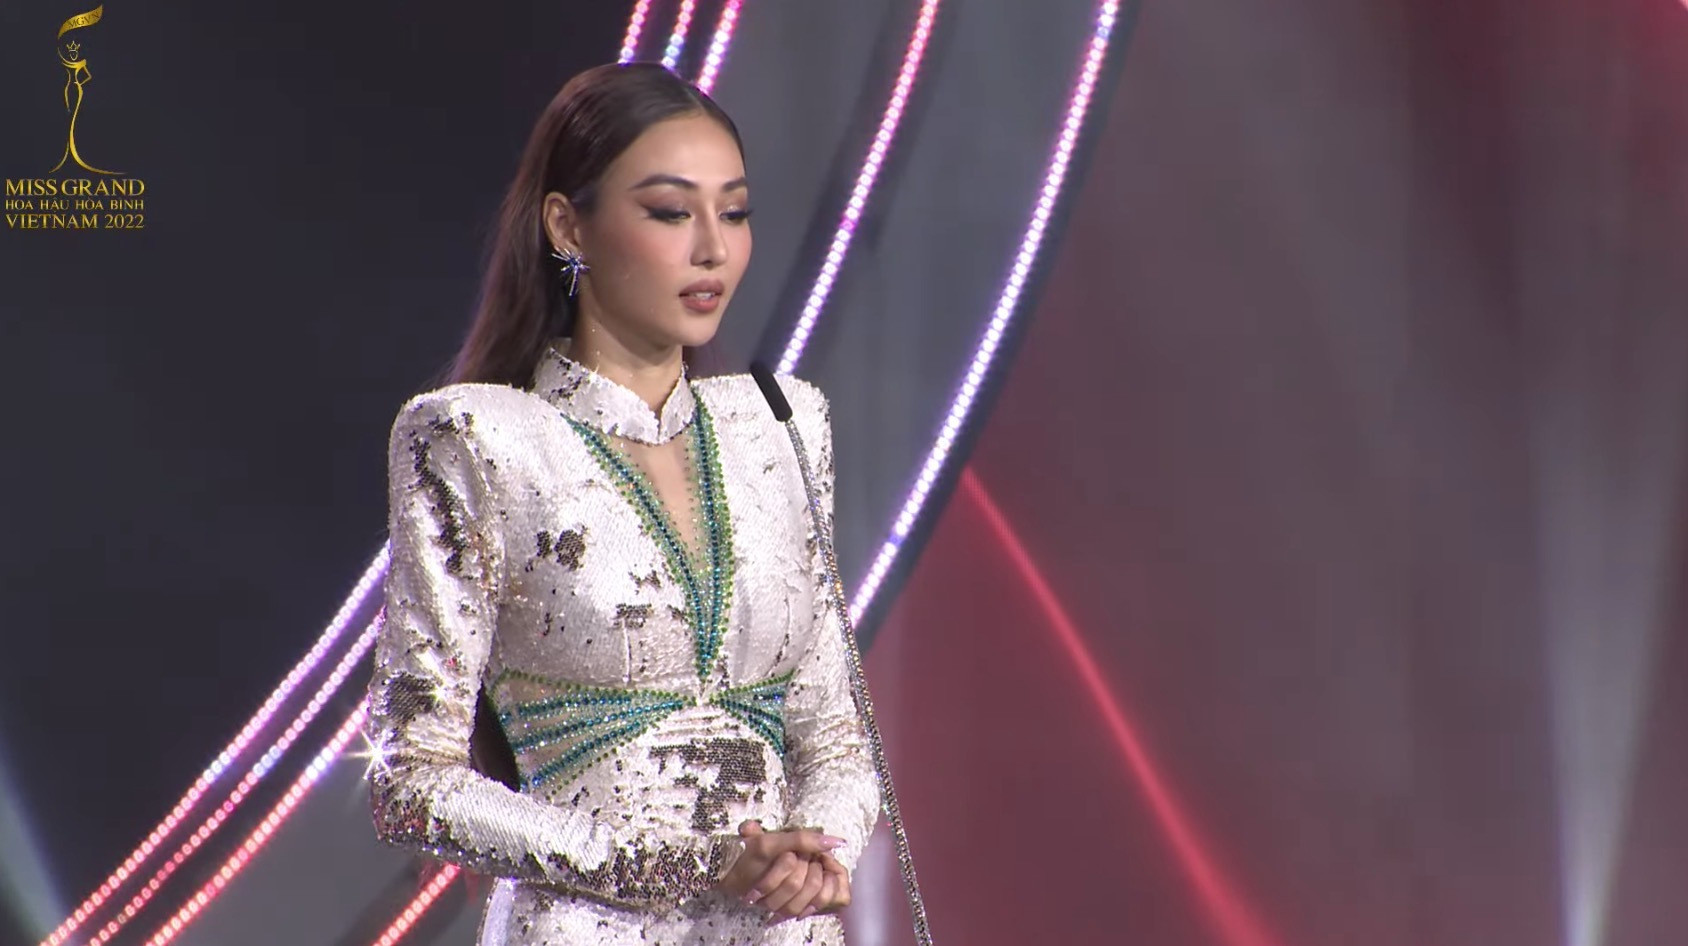 Đoàn Thiên Ân đăng quang Miss Grand Vietnam - Hoa hậu Hòa bình Việt Nam 2022 - 7